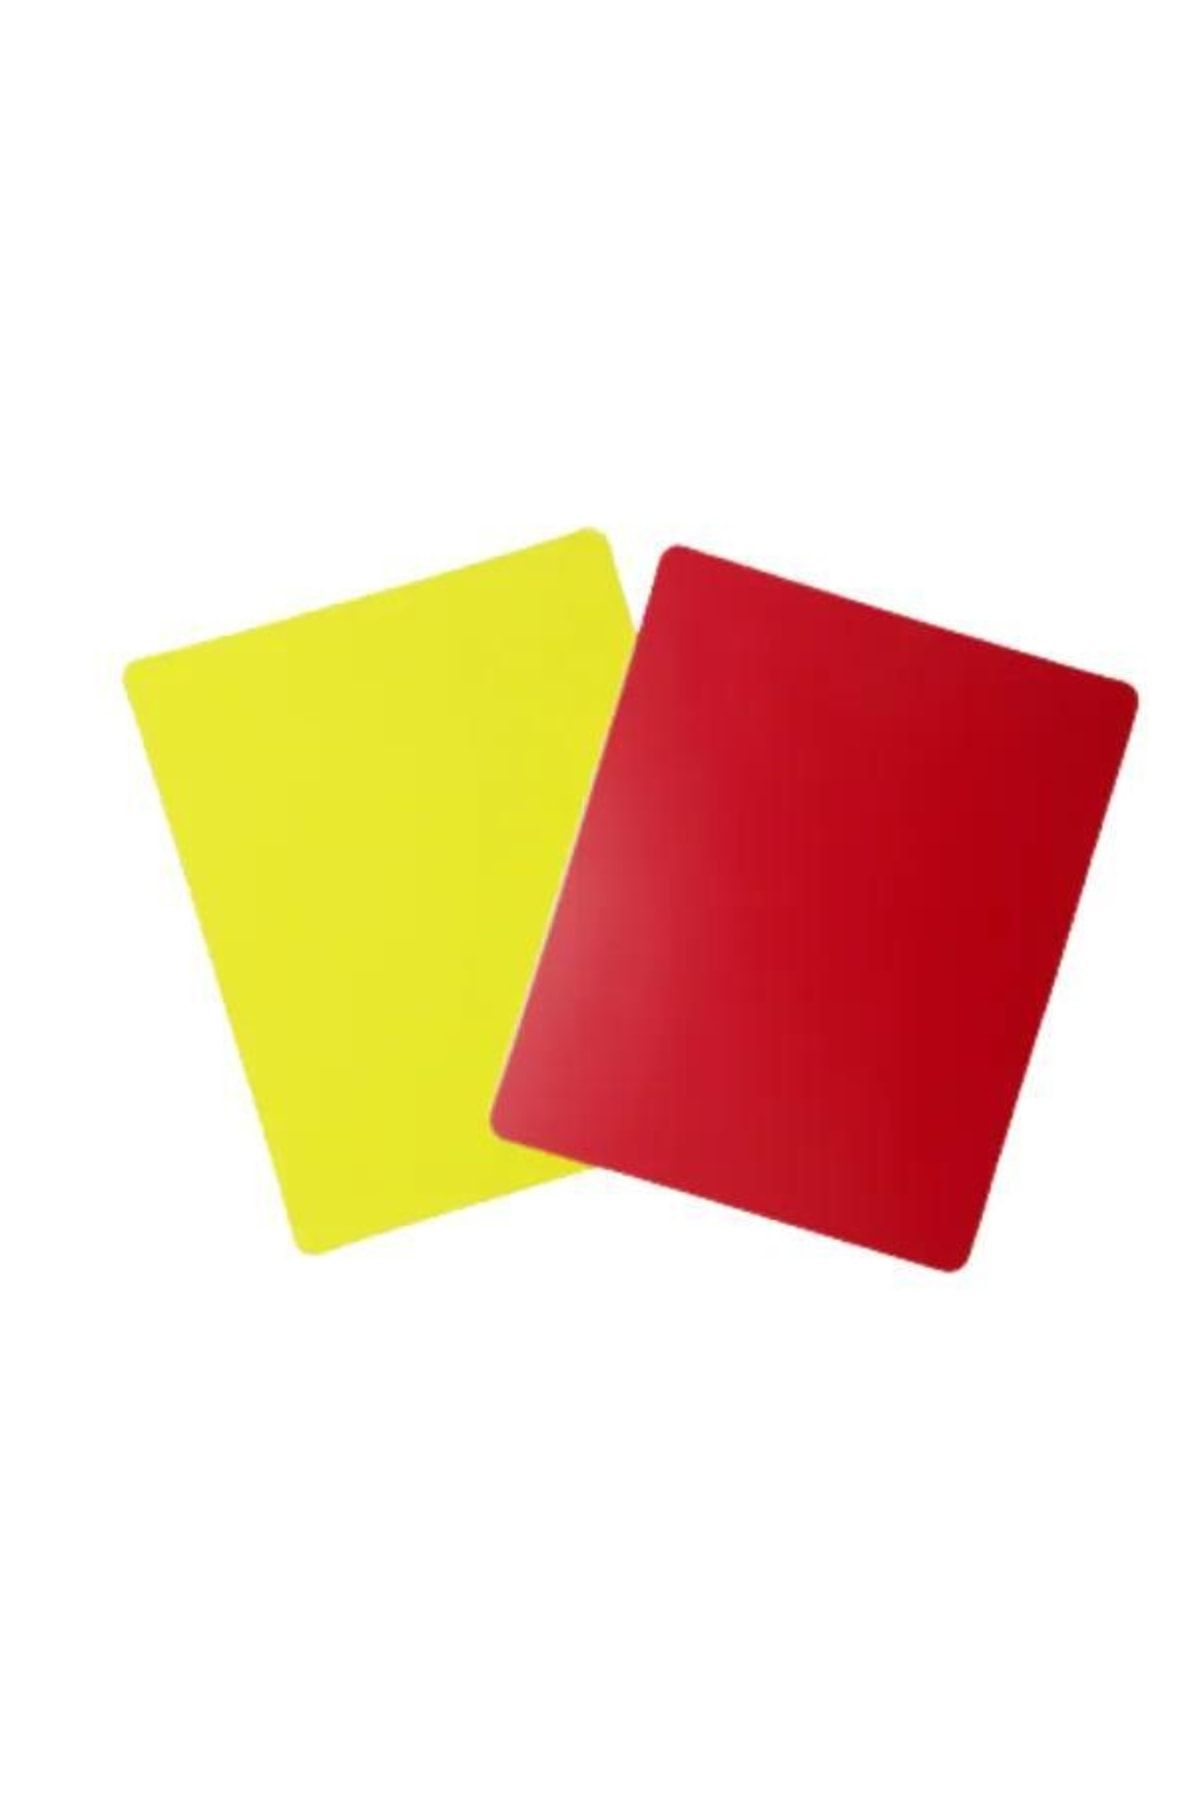 Decathlon Futbol Hakem Kartları Sarı/kırmızı Polipropilen